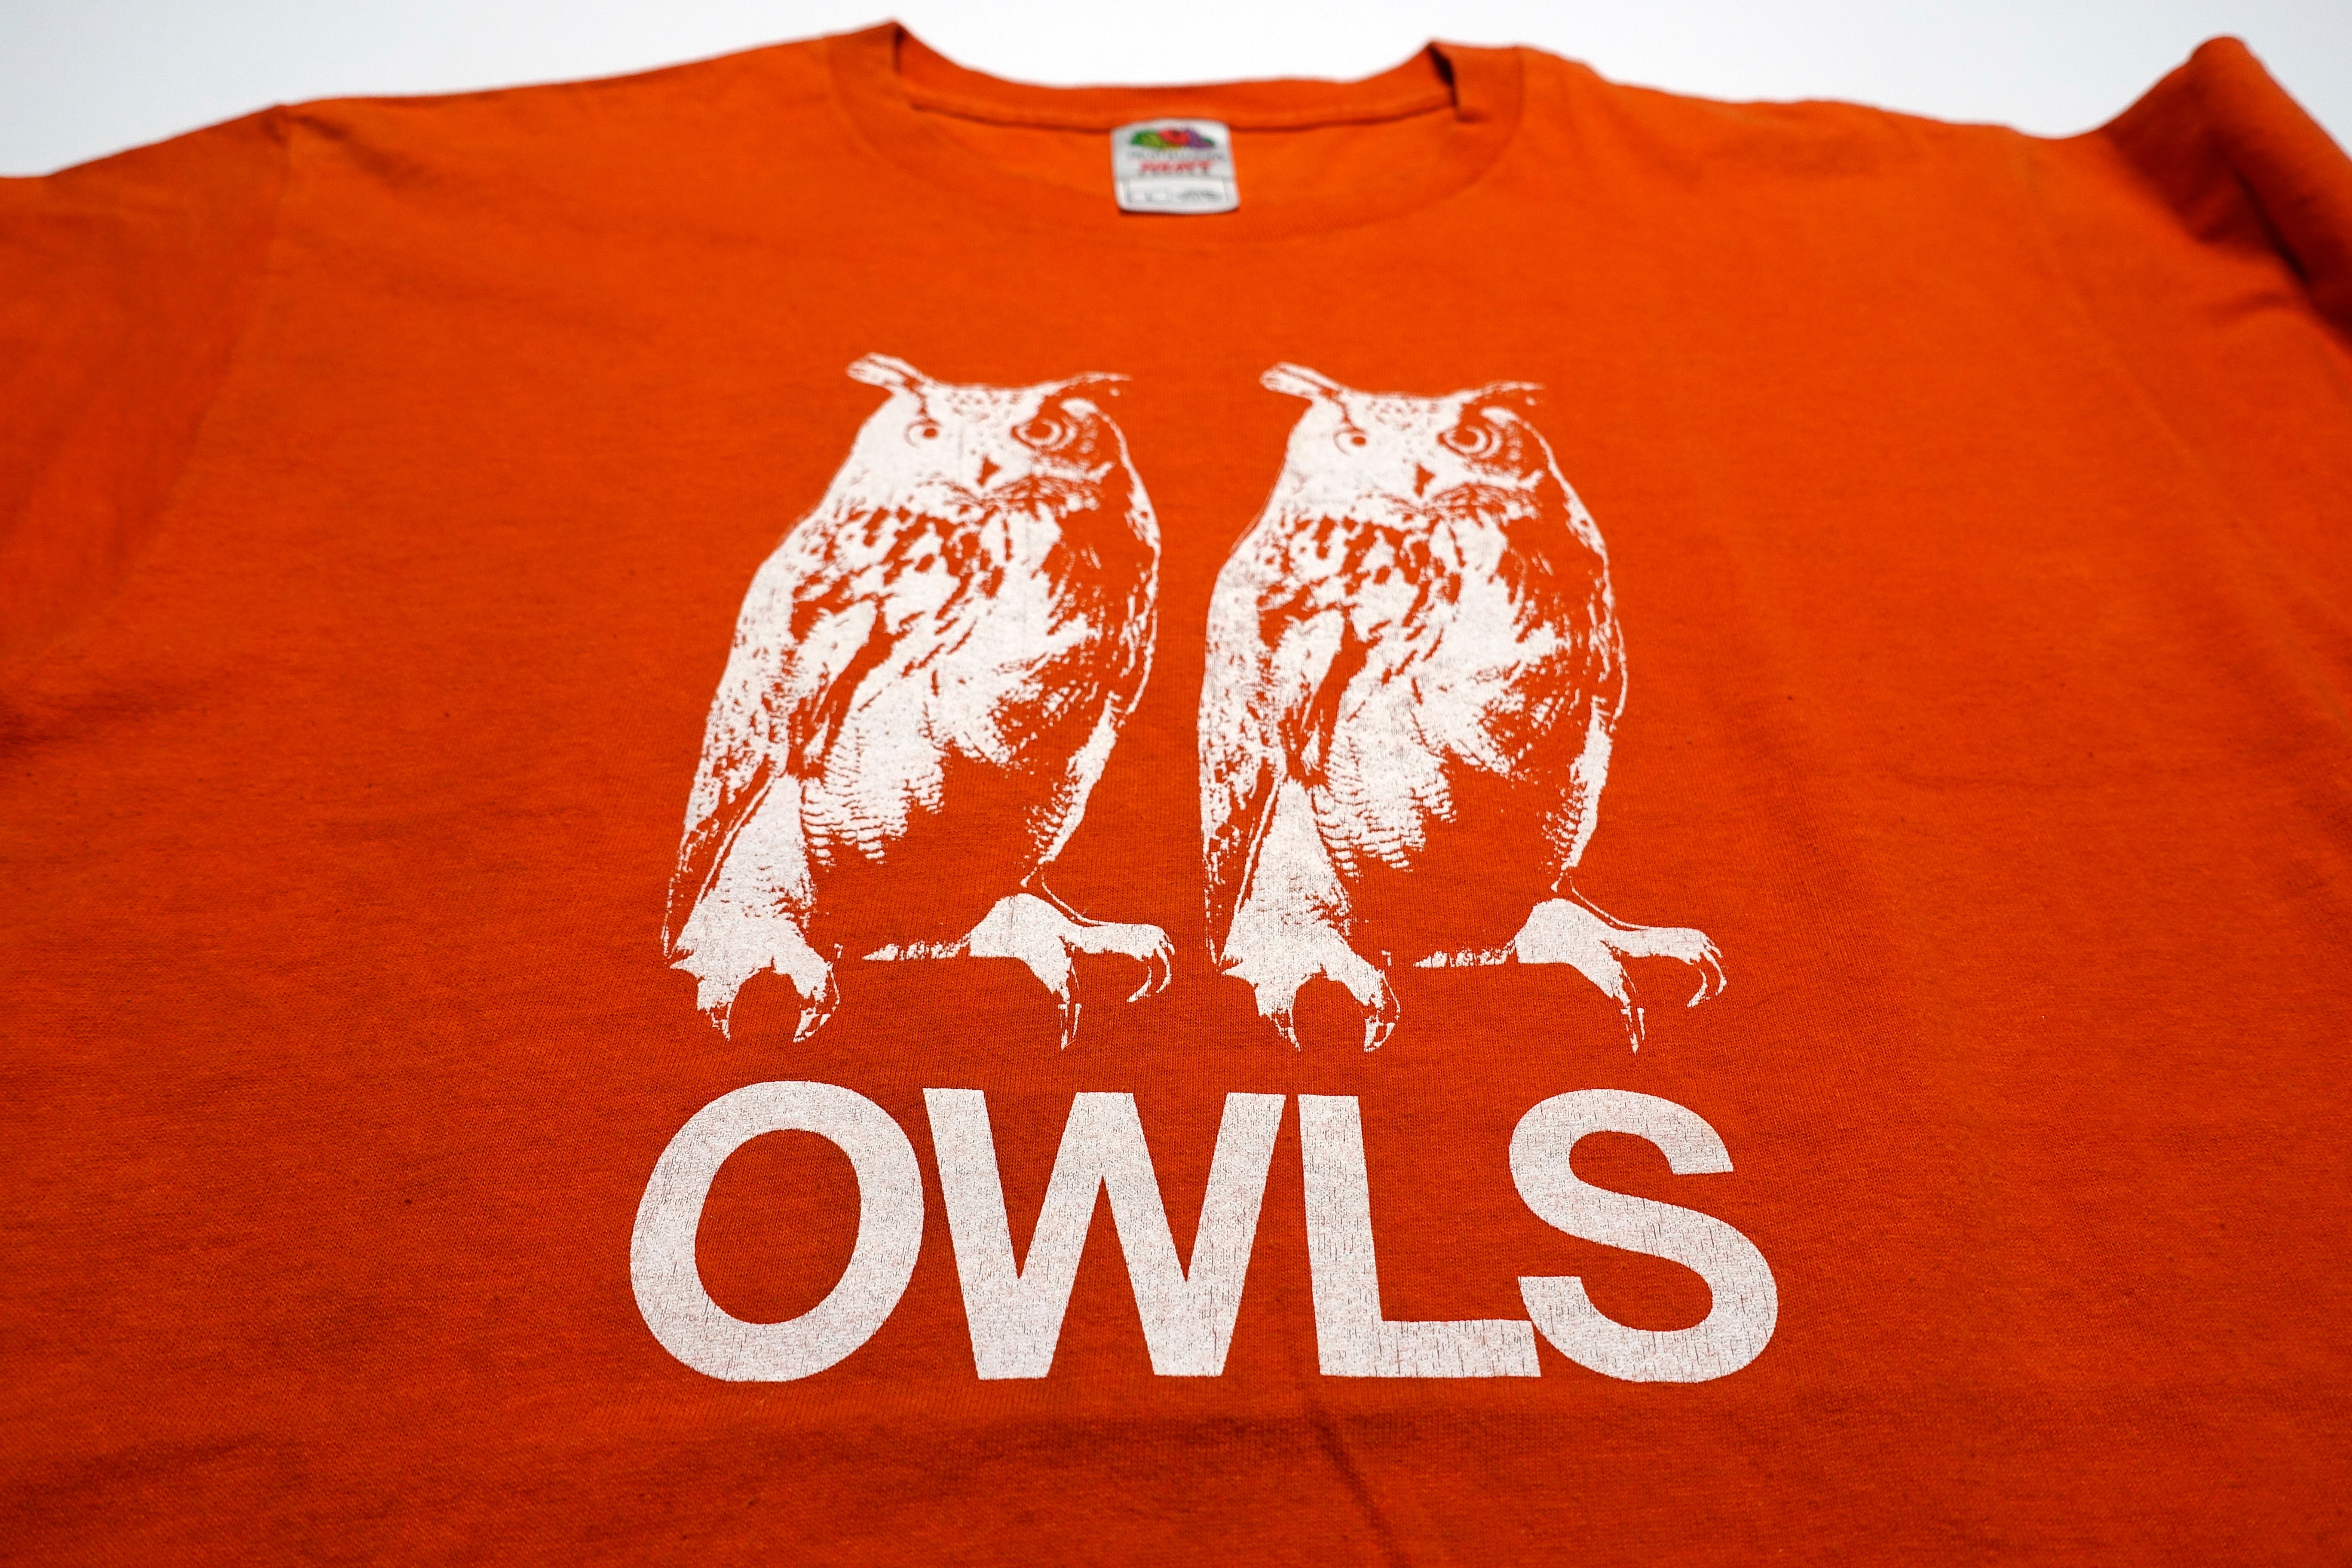 Owls - Owls 2001 Tour Shirt Size Large